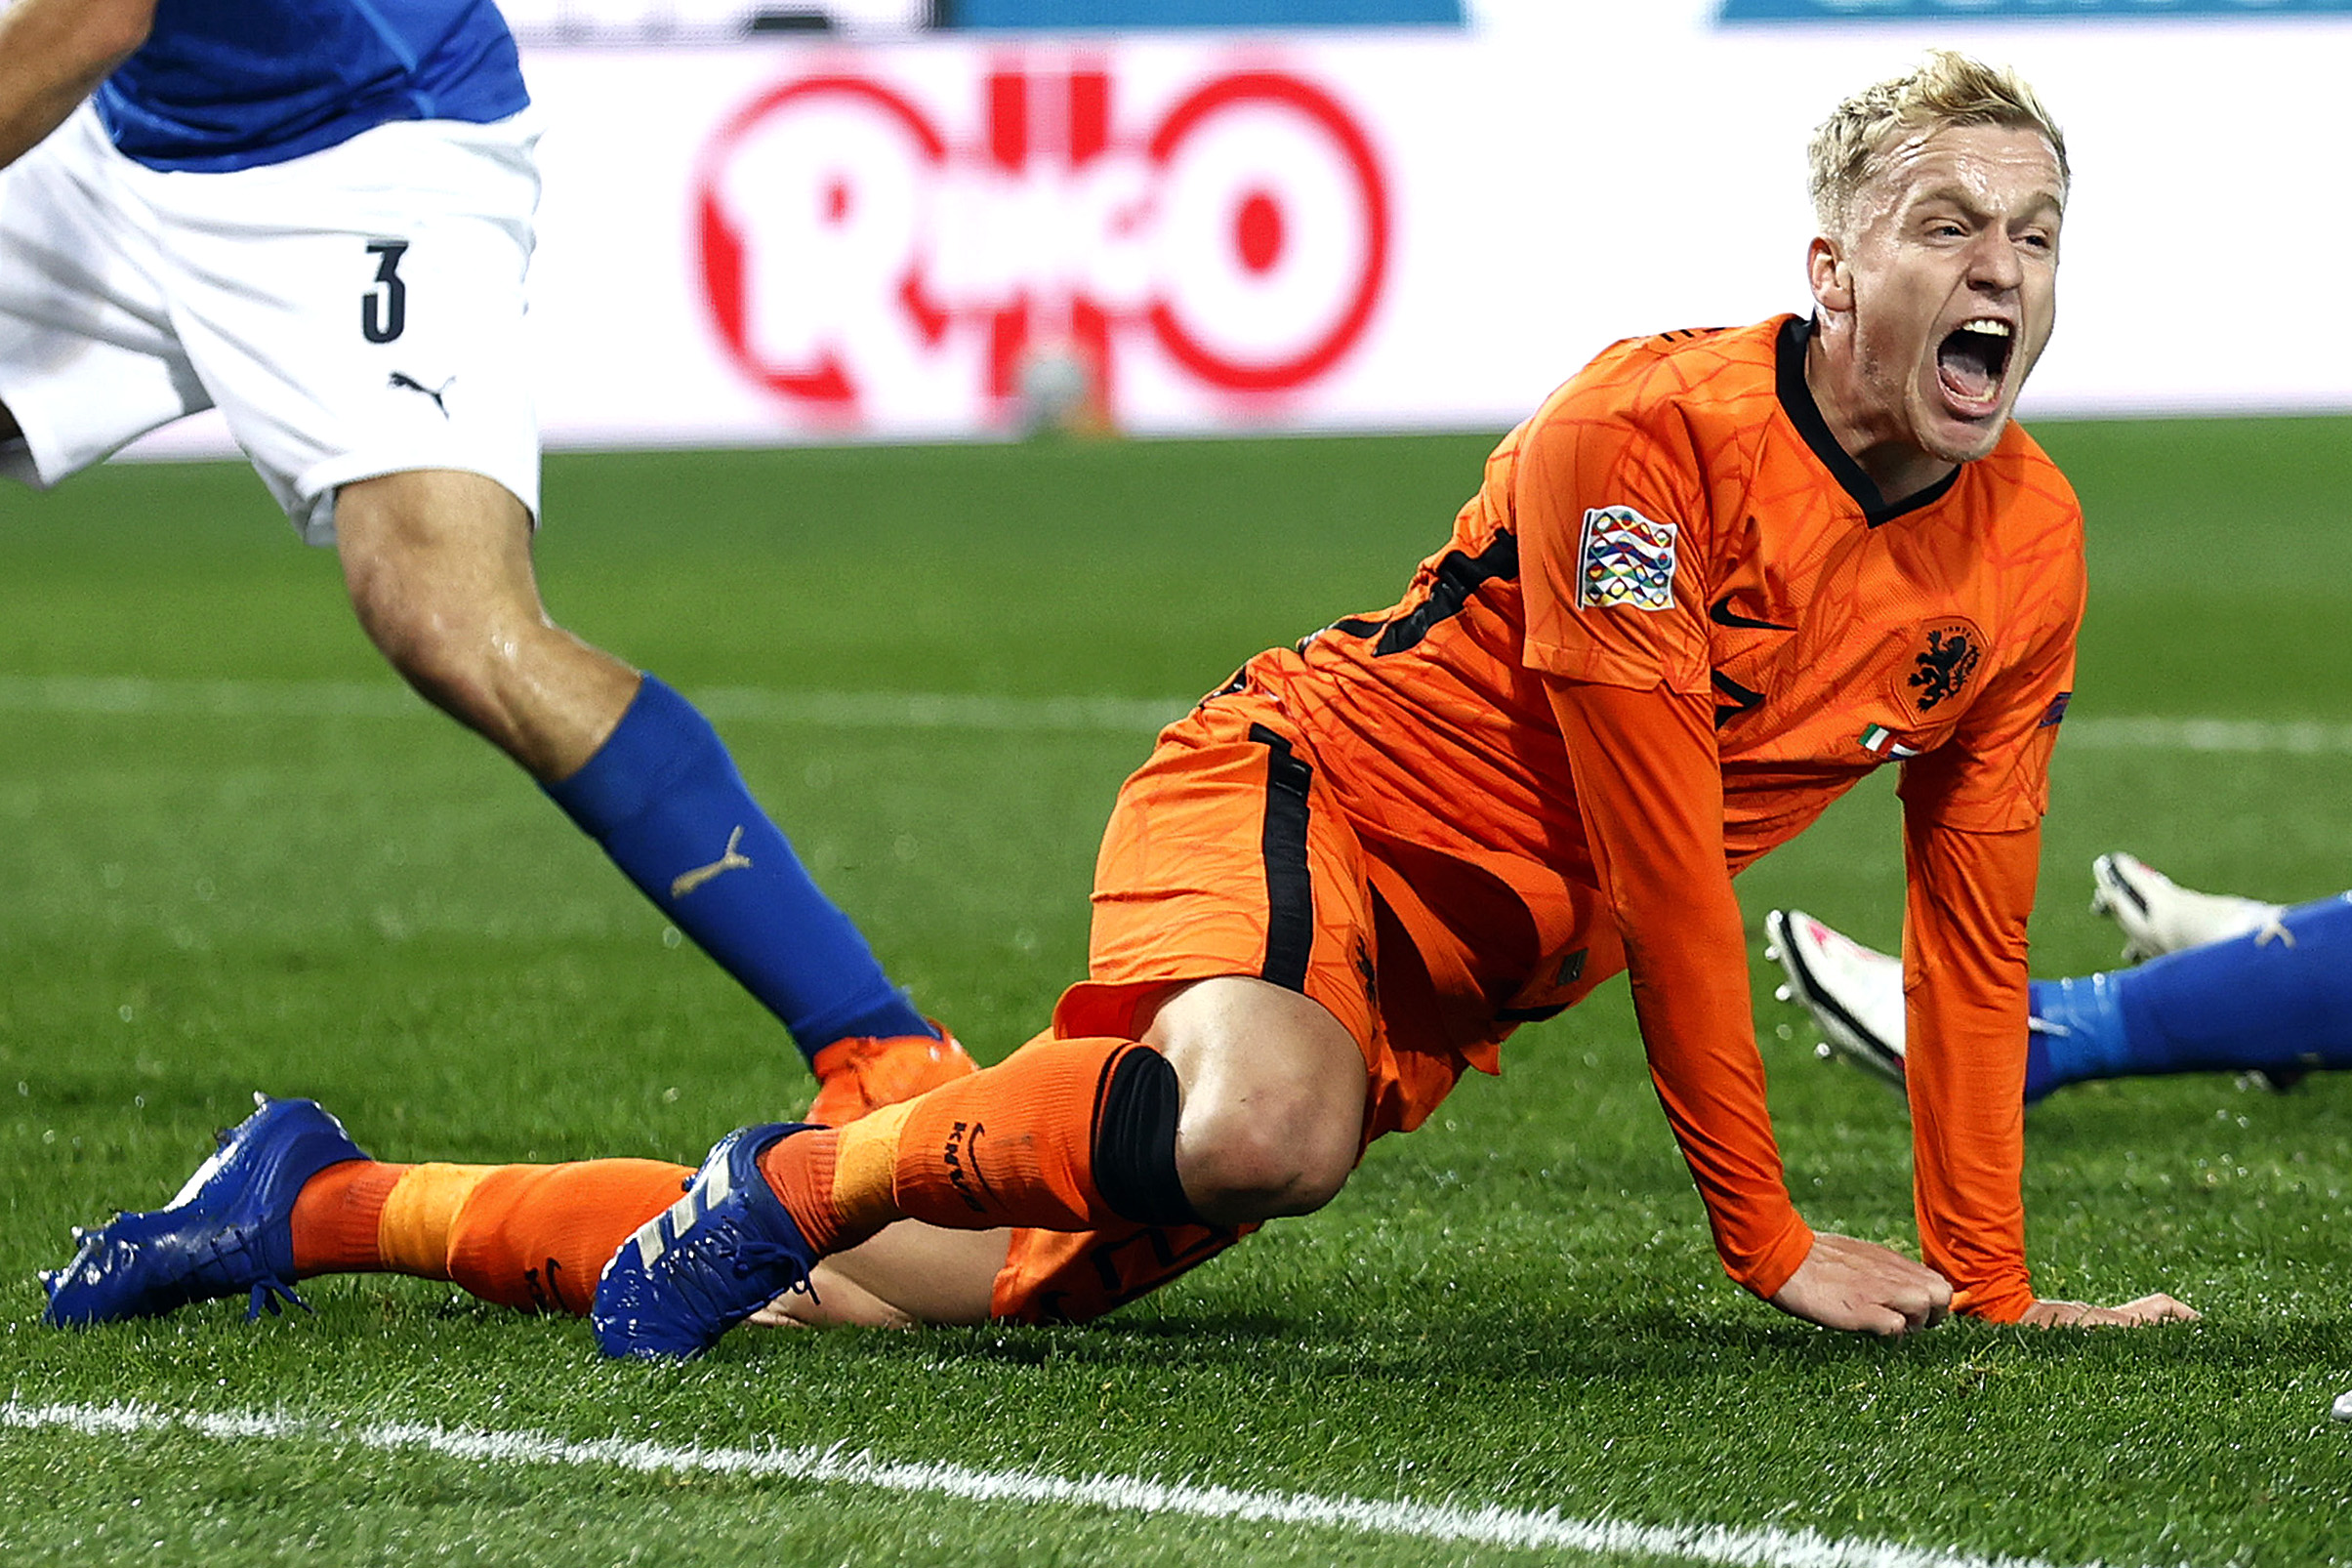 Midfielder Donny van de Beek roaring with delight as he crouches after scoring the equaliser.